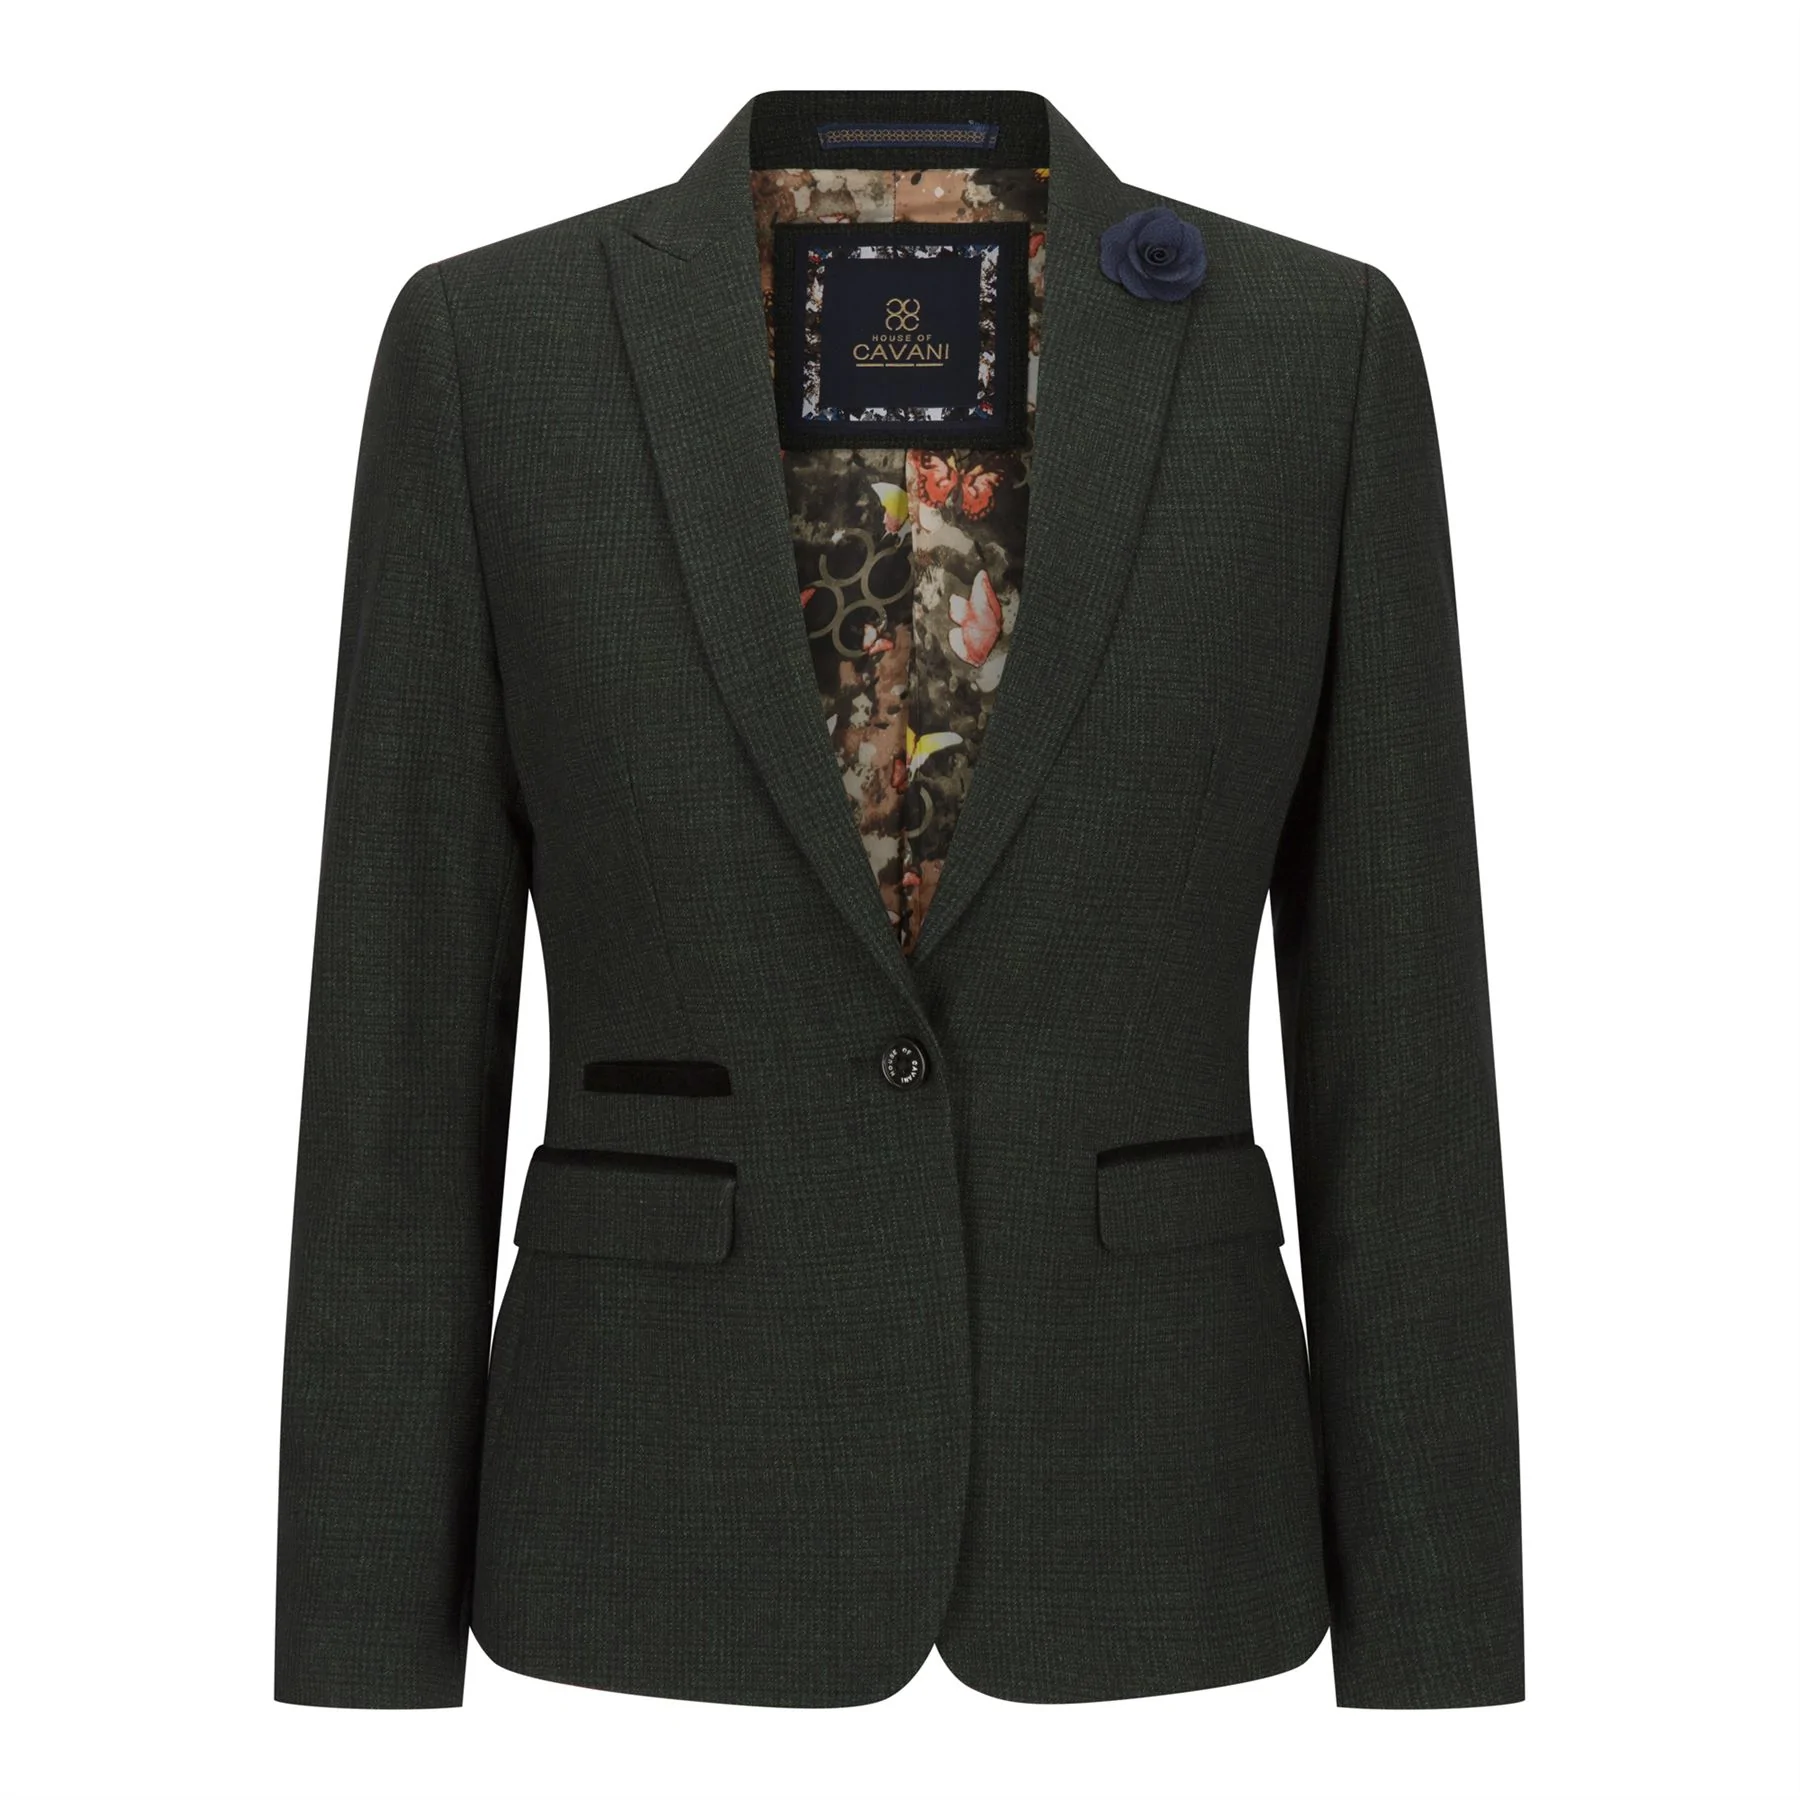 Damen Tweed Grün Check Blazer Wolle Klassische Jagd Jacke Vintage 1920s Retro